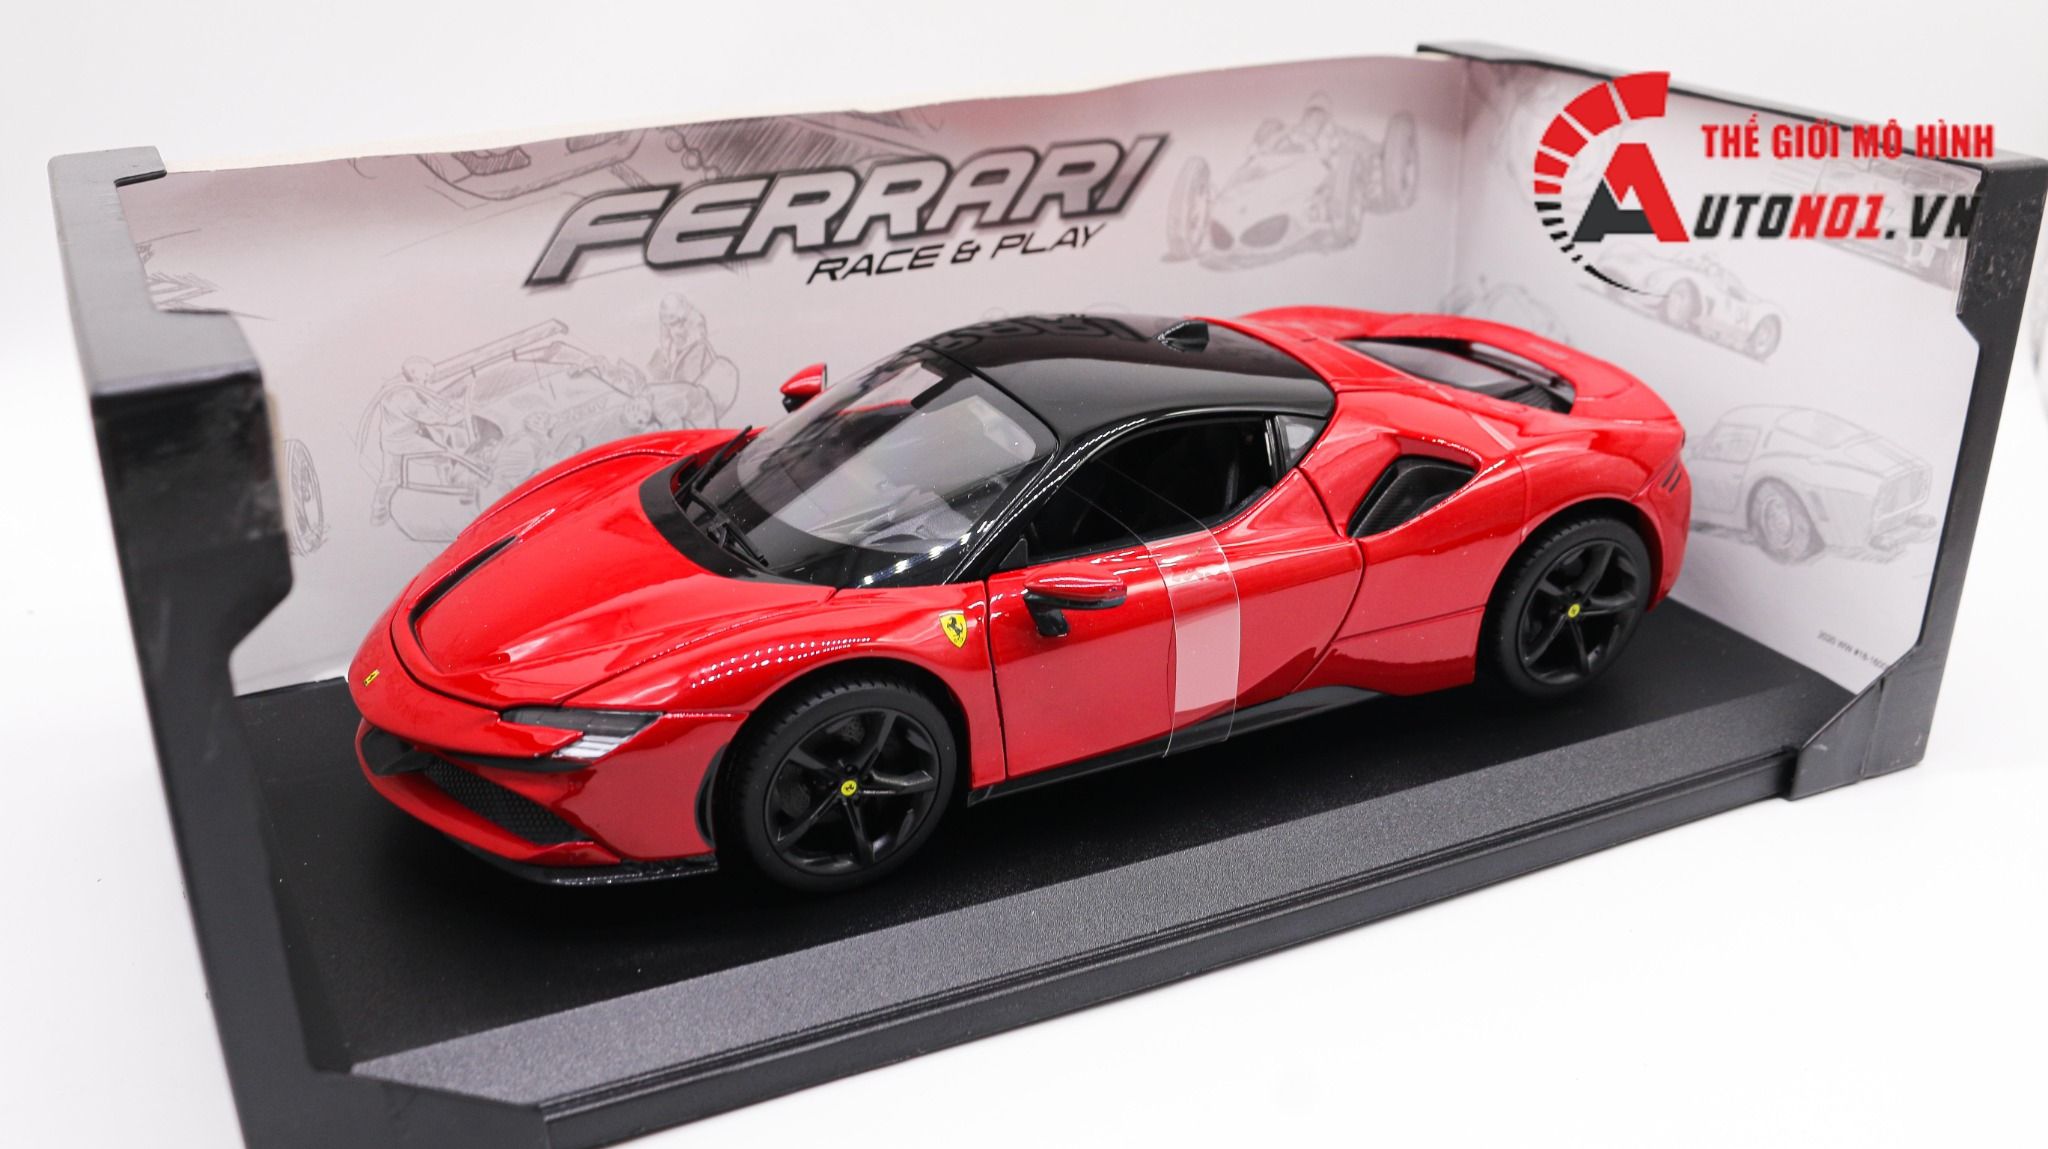 Siêu mô hình Ferrari Tuỳ biến như xe thật giá rẻ cũng phải gần trăm  triệu có mẫu độ ngang giá Kia Morning